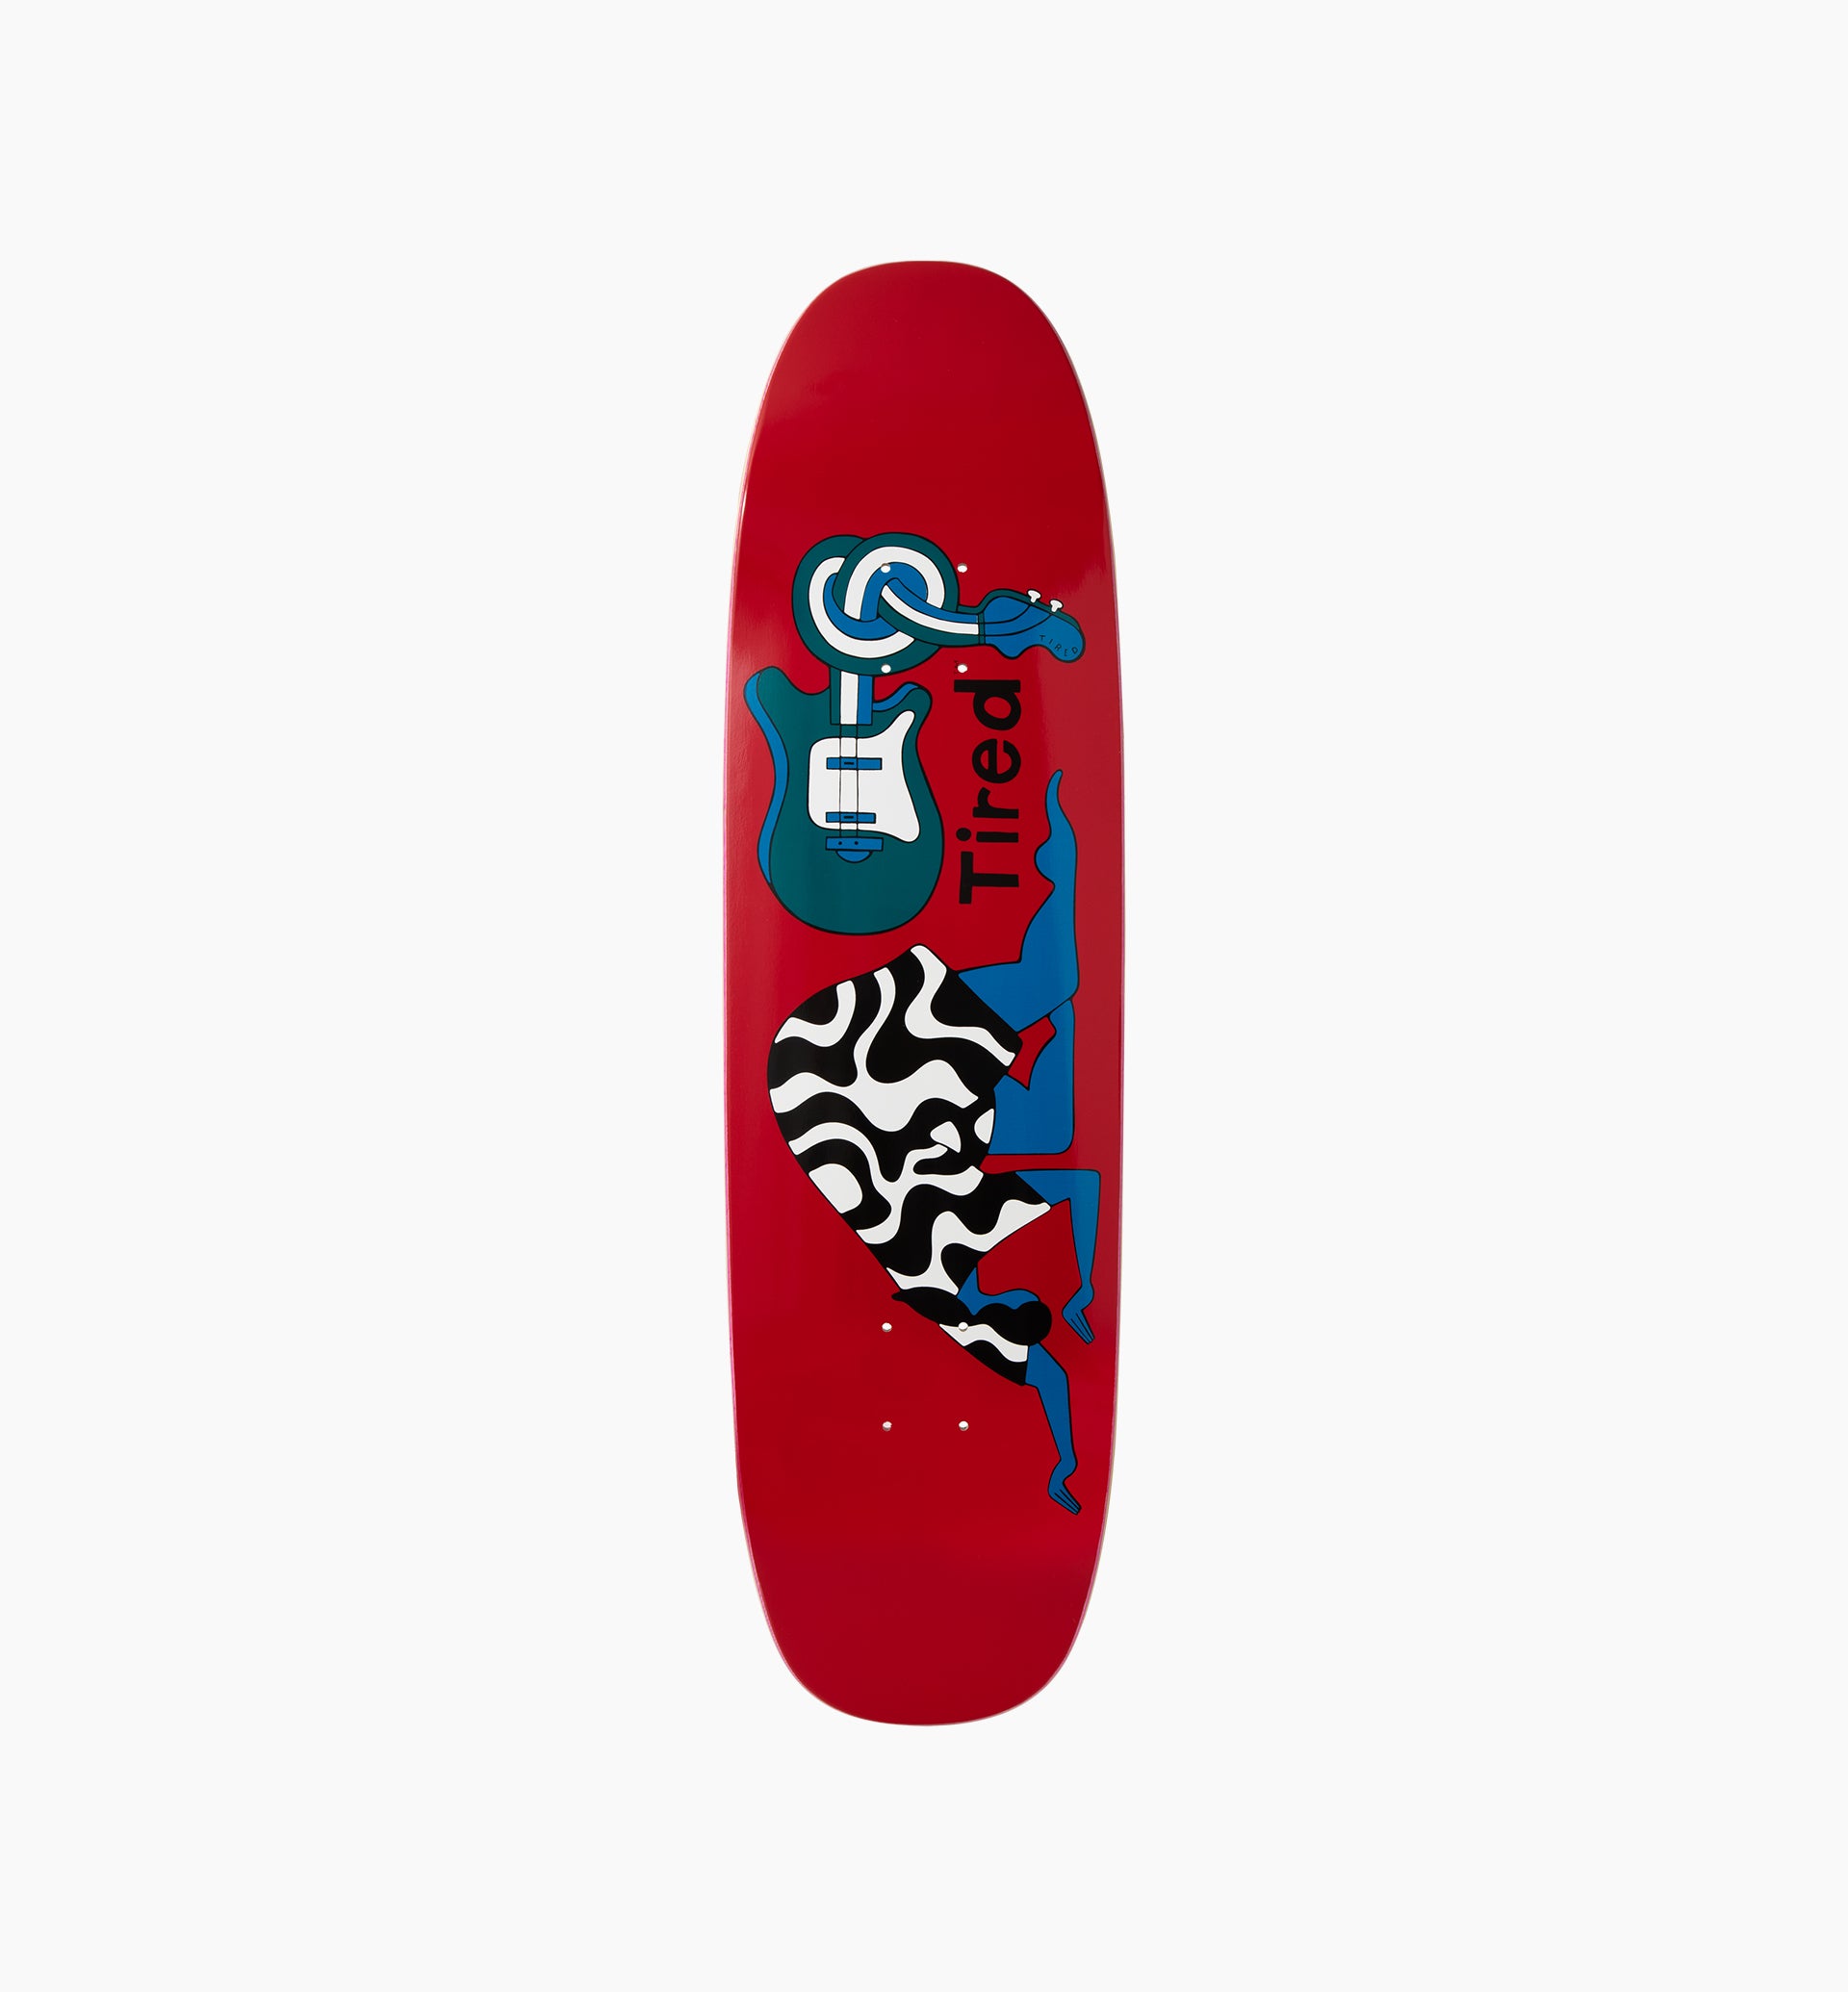 Parra - spinal tap skateboard deck